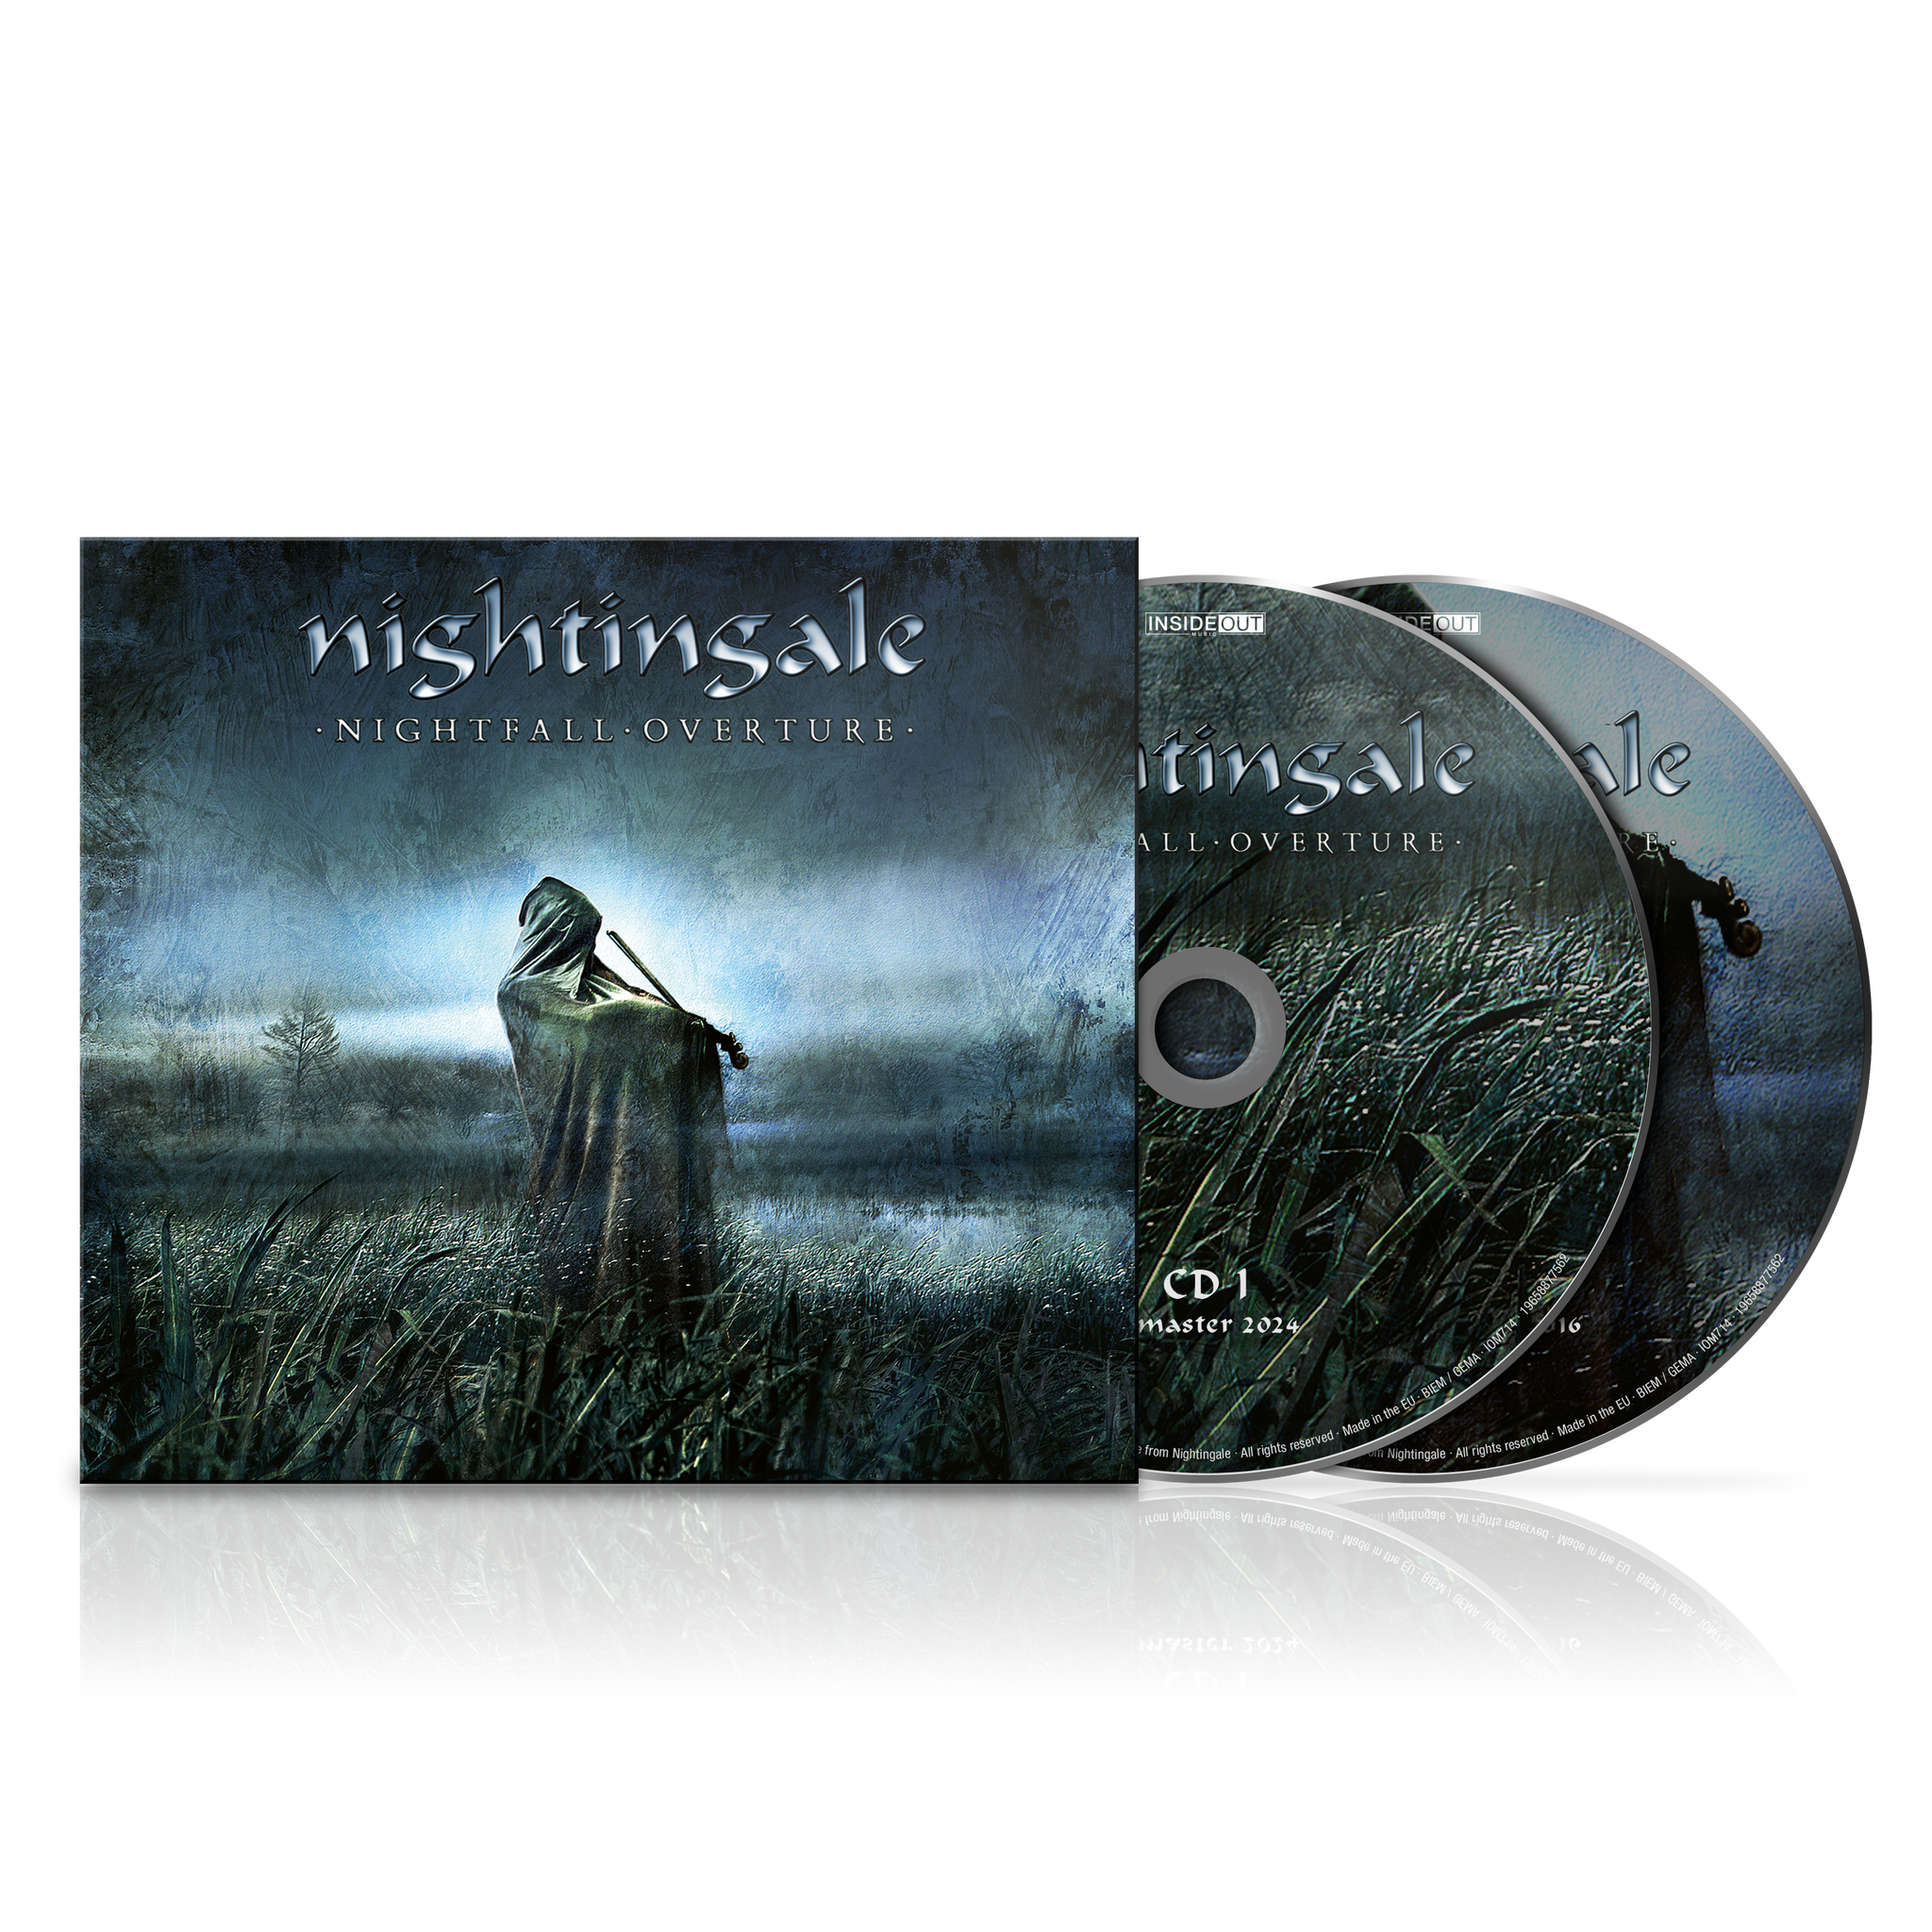 Nightingale - Nightfall Overture (Re-issue) - 2xCD